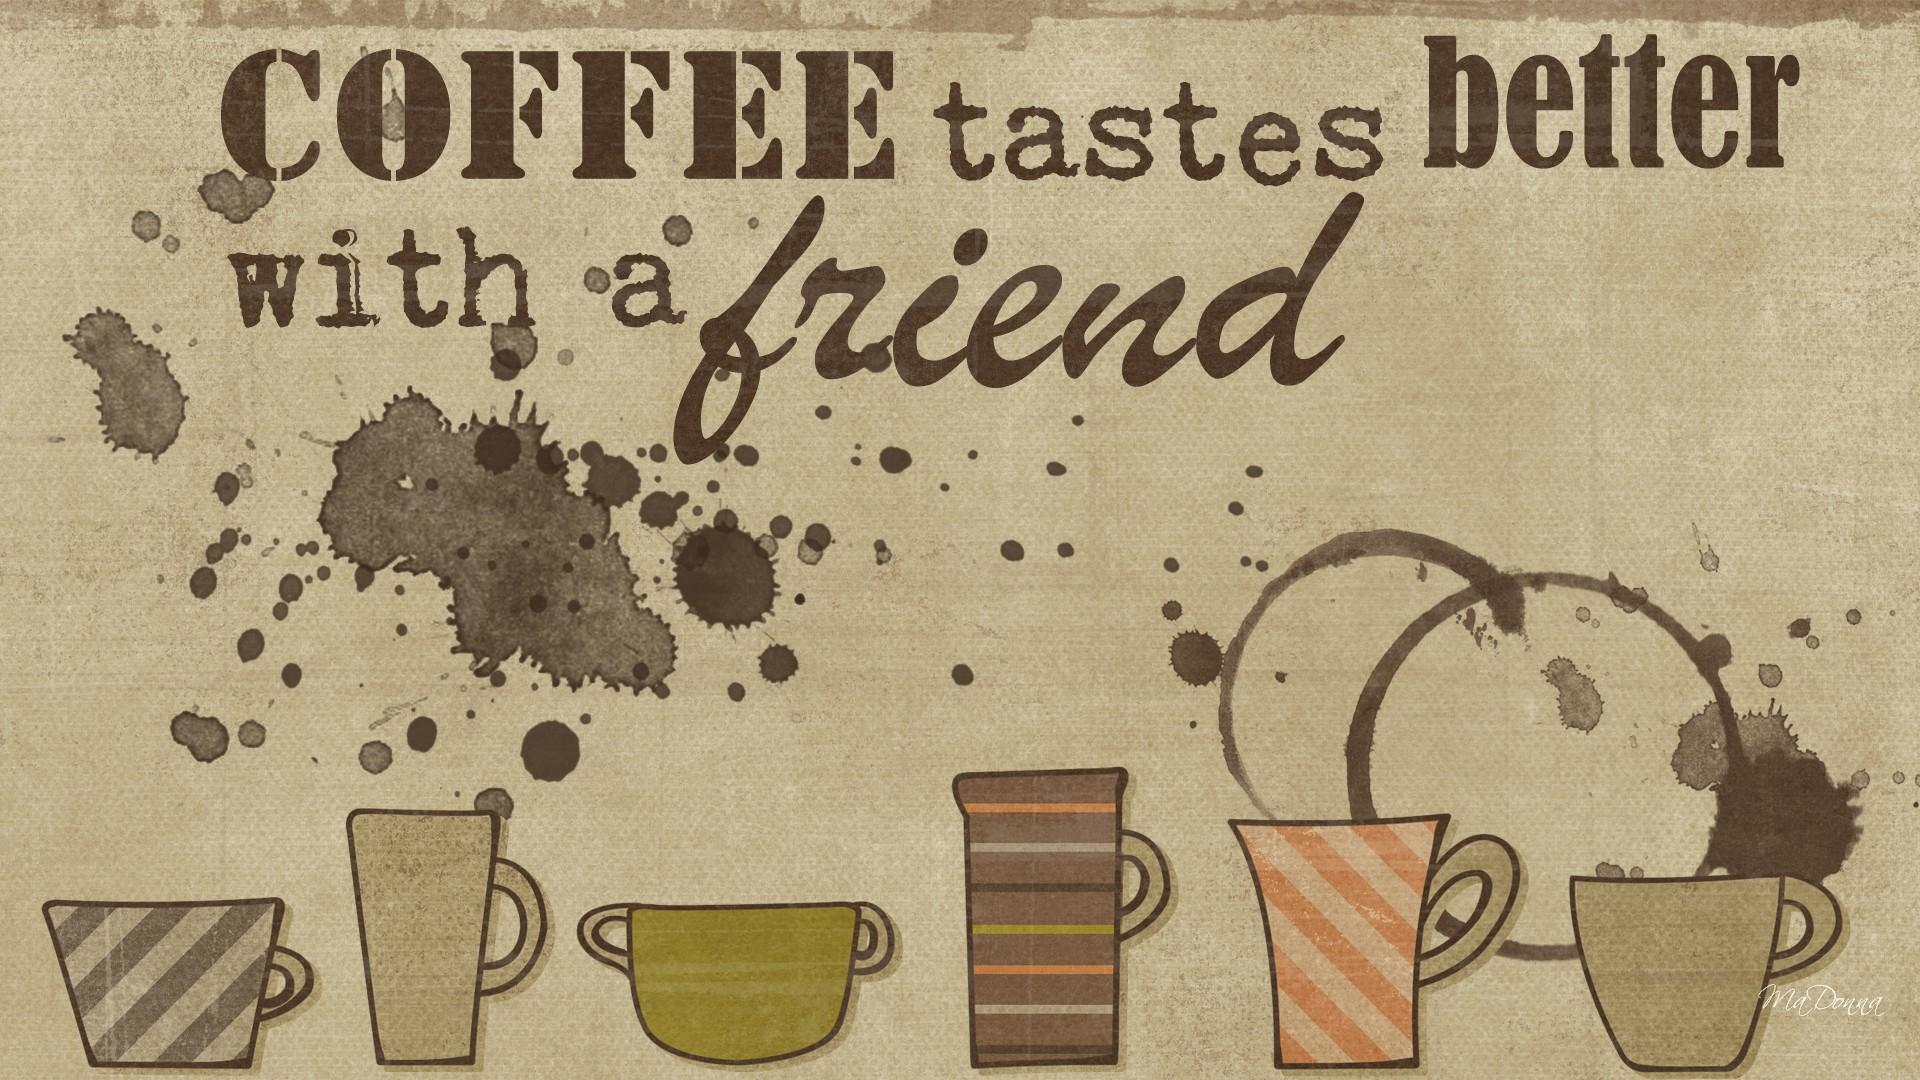 We coffee yesterday. Кофе обои. Кофейня обои. Обои для кафе. Обои с надписью кофе.